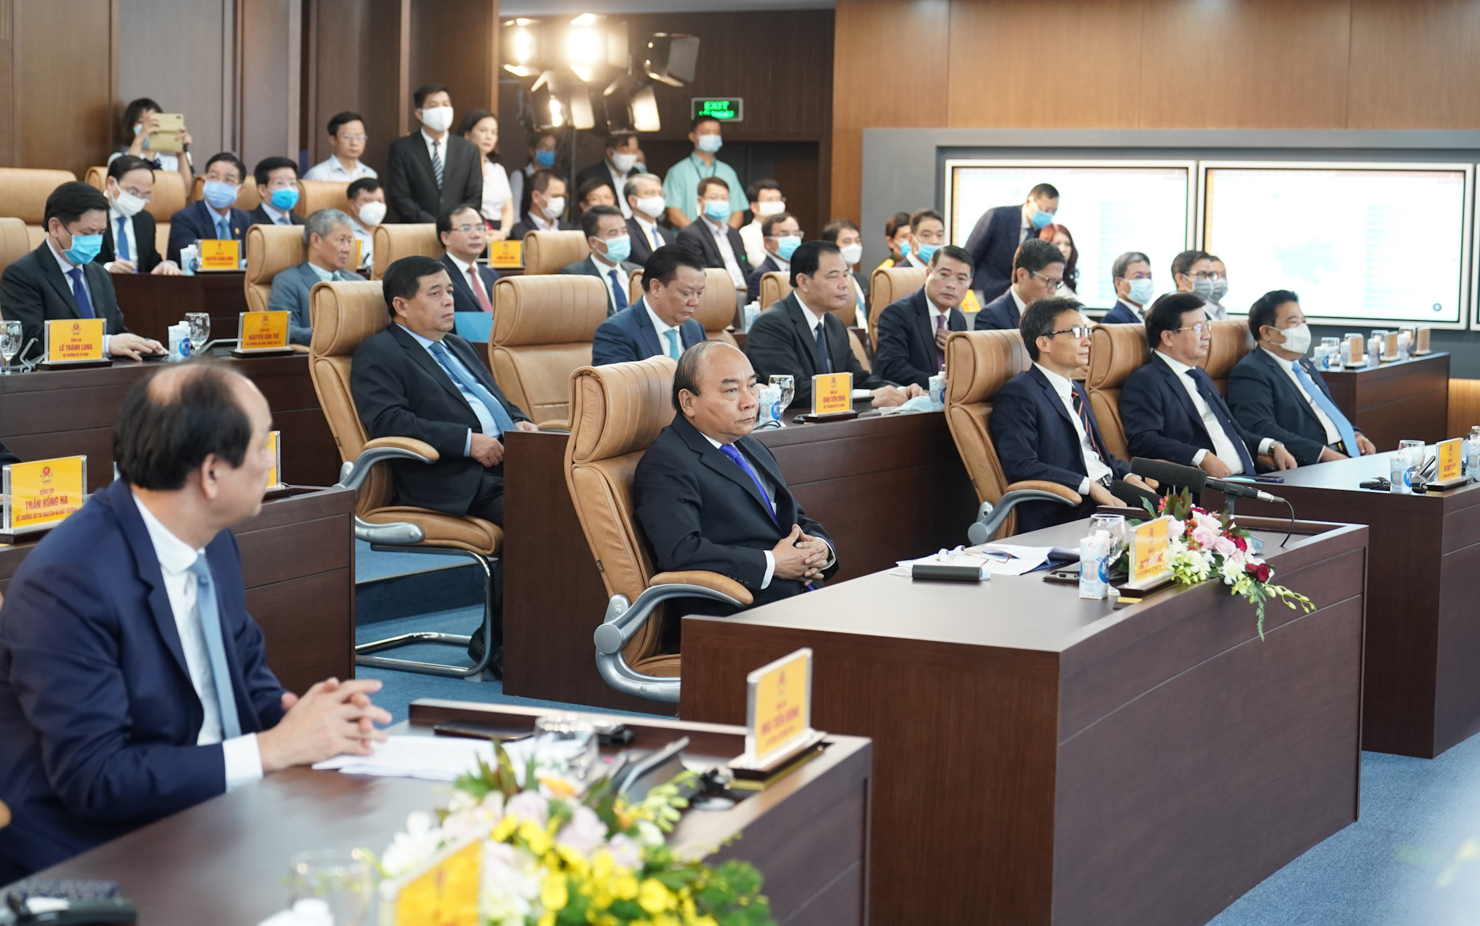 Thủ tướng Nguyễn Xuân Phúc cùng các đại biểu tham dự lễ khai trương. Ảnh: VGP/Quang Hiếu